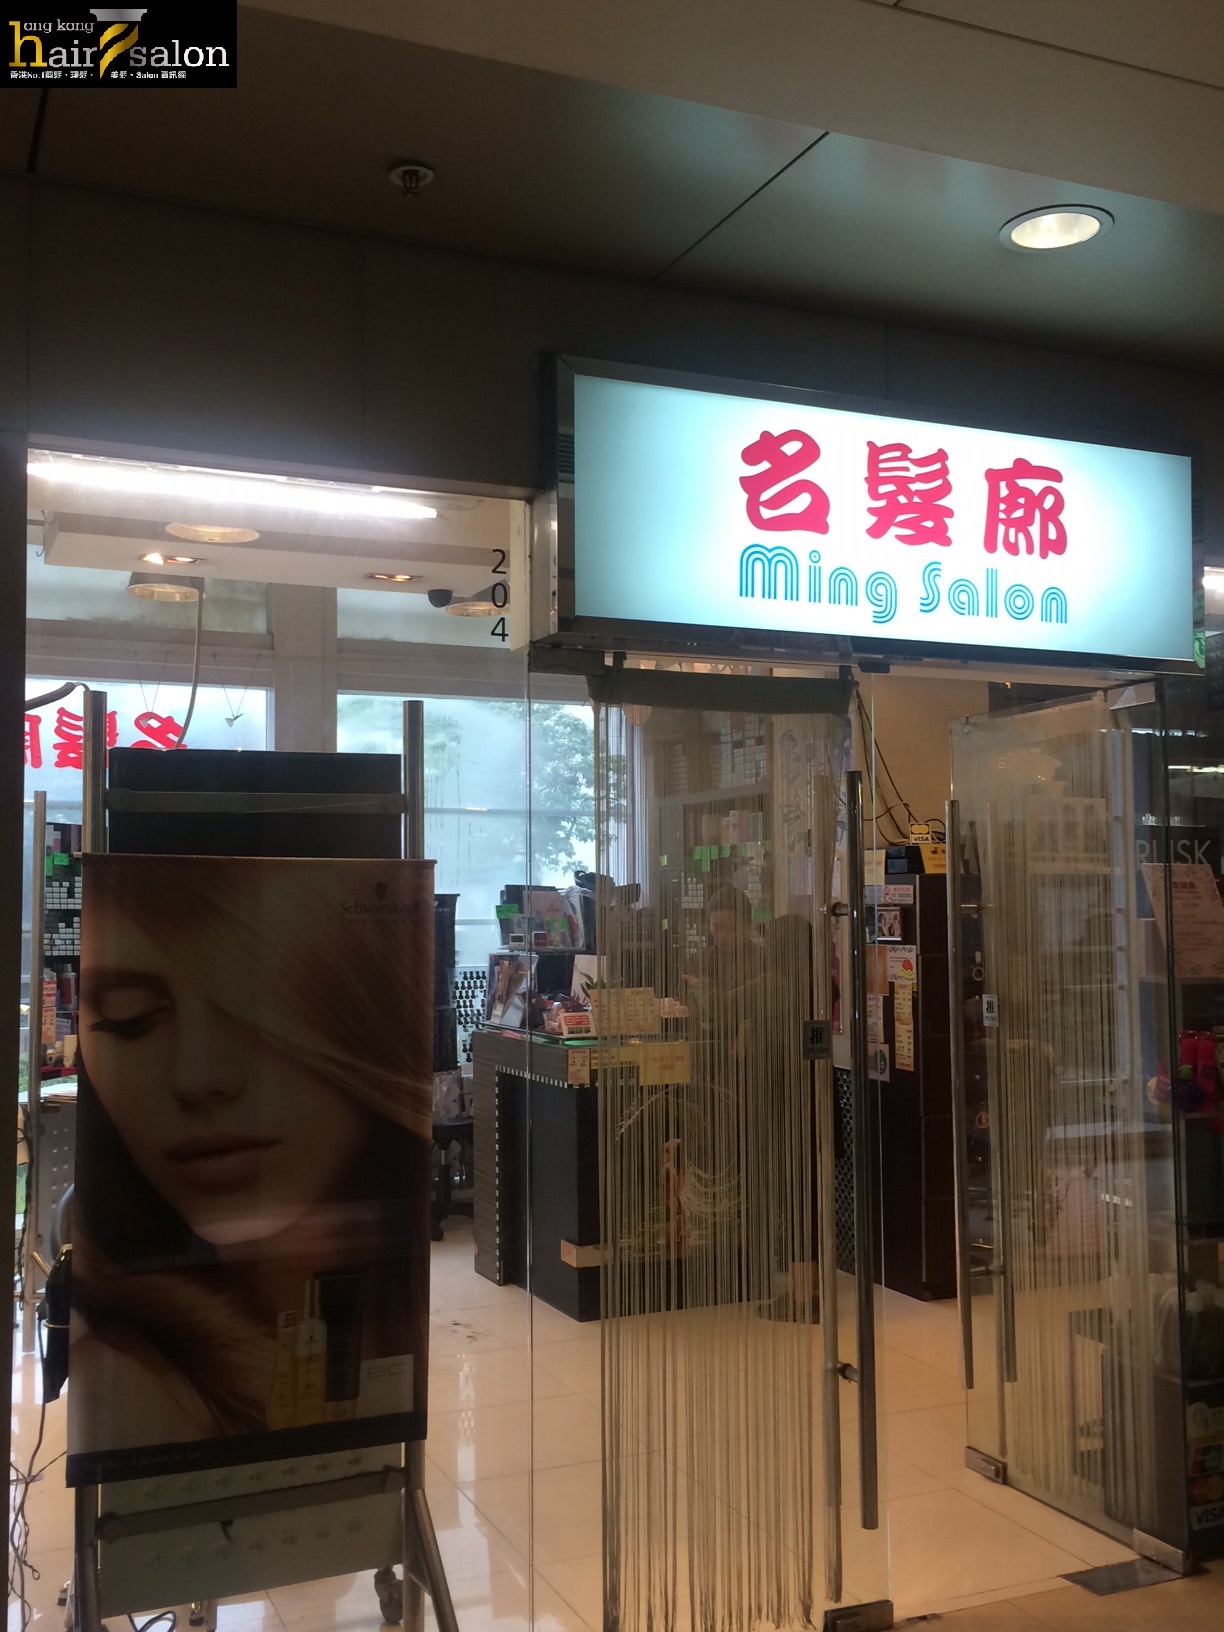 髮型屋Salon集團名髮廊 Ming Salon (葵涌店) @ 香港美髮網 HK Hair Salon